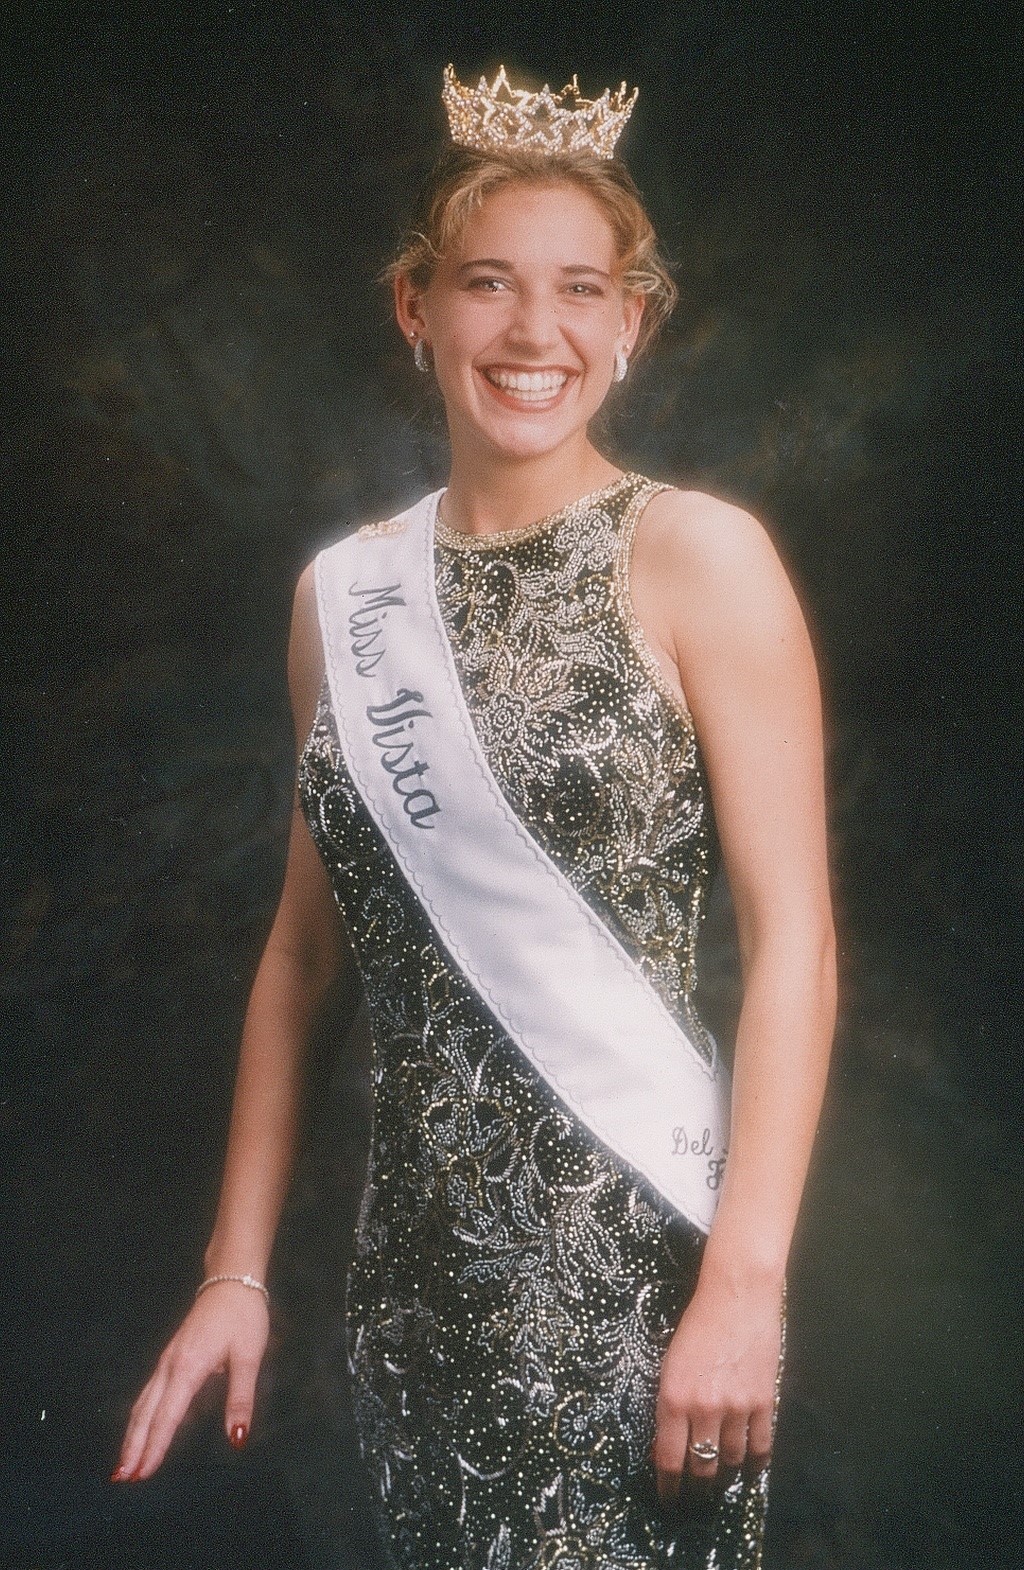 Gretchen Smalley, Miss Vista 1995